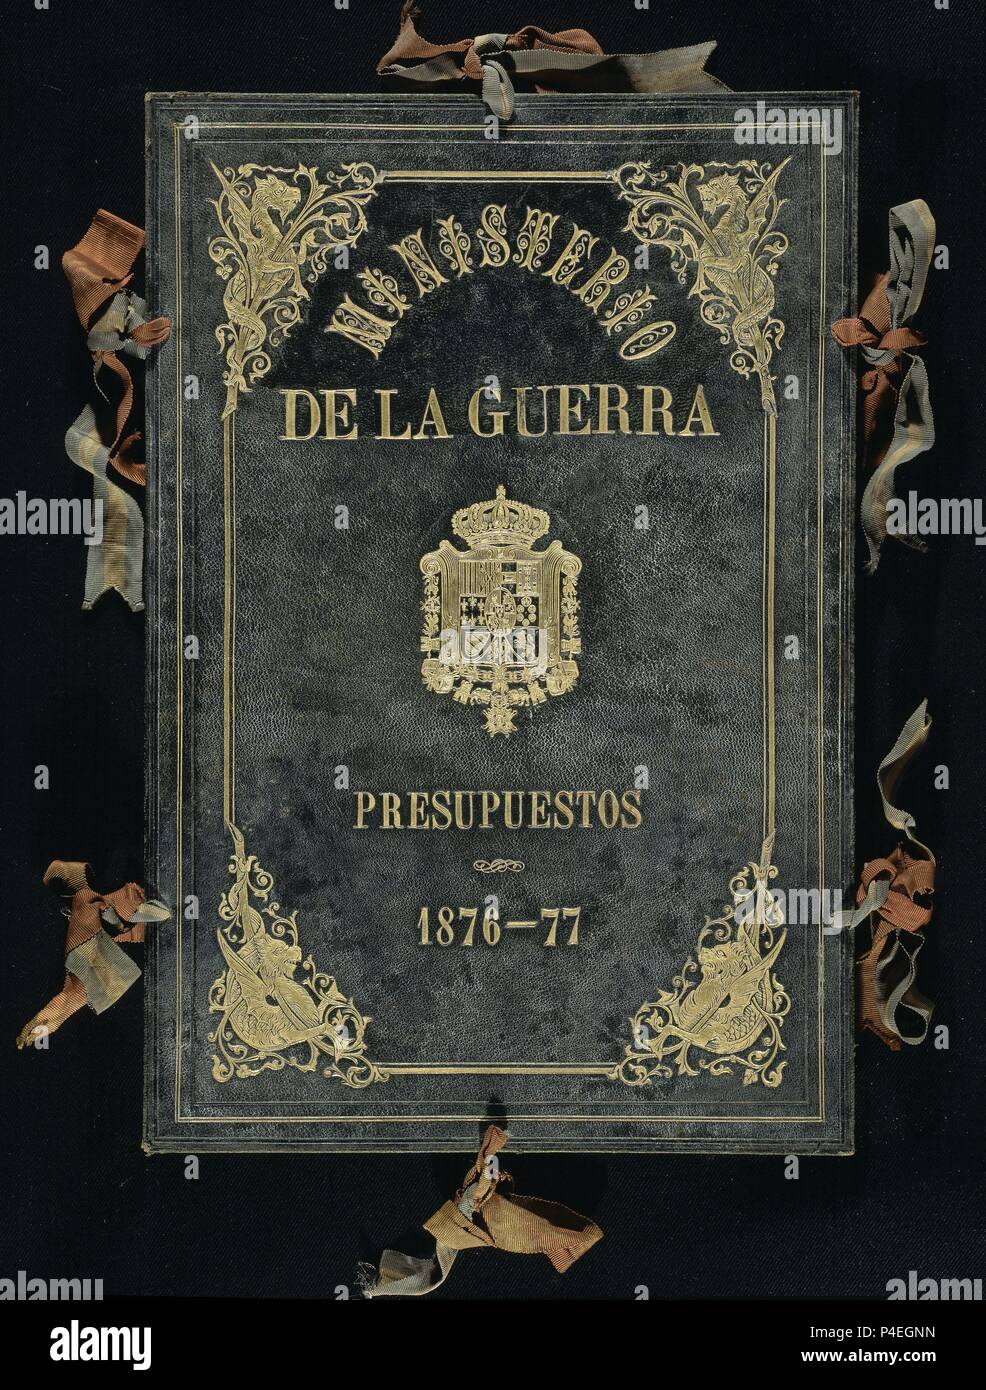 MINISTERIO DE LA GUERRA - PRESUPUESTOS 1876-1877 - CARPETA. Location: CONGRESO DE LOS DIPUTADOS-BIBLIOTECA, MADRID, SPAIN. Stock Photo